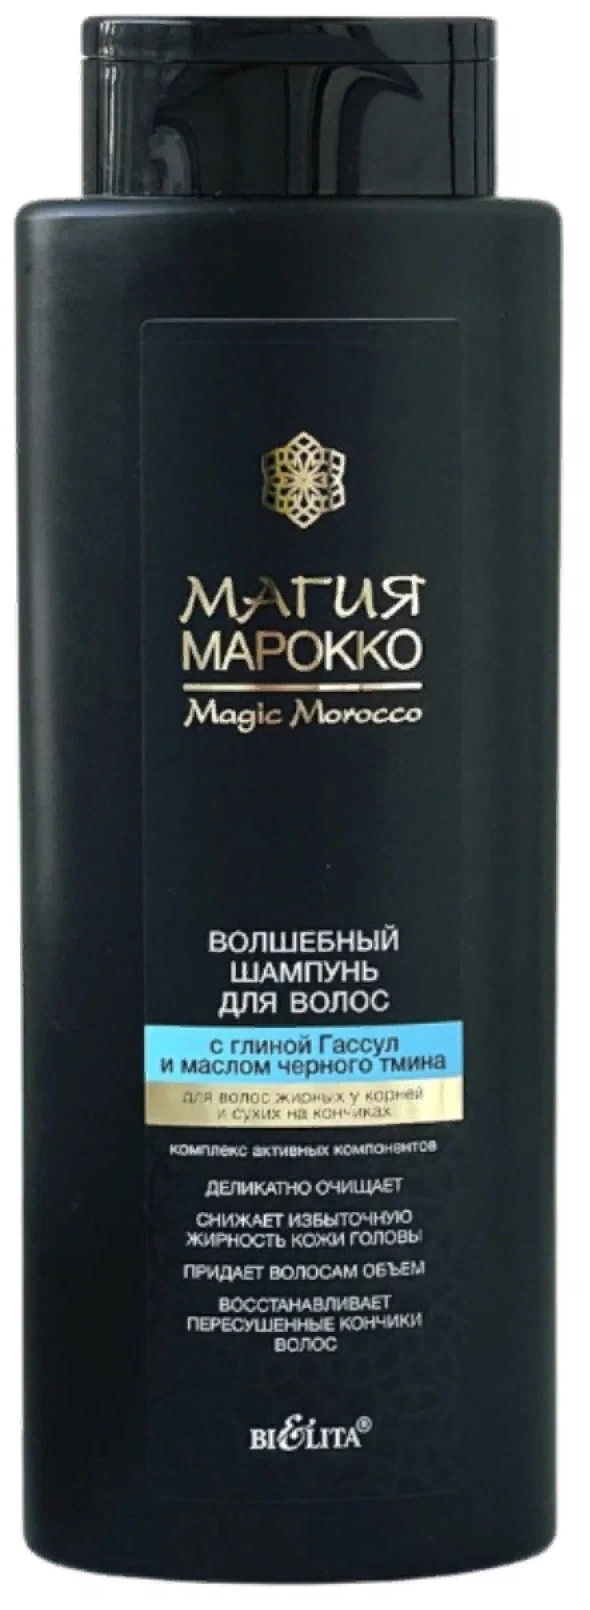 Волшебный шампунь для волос магия марокко с глиной Гассул и маслом черного тмина 370 мл